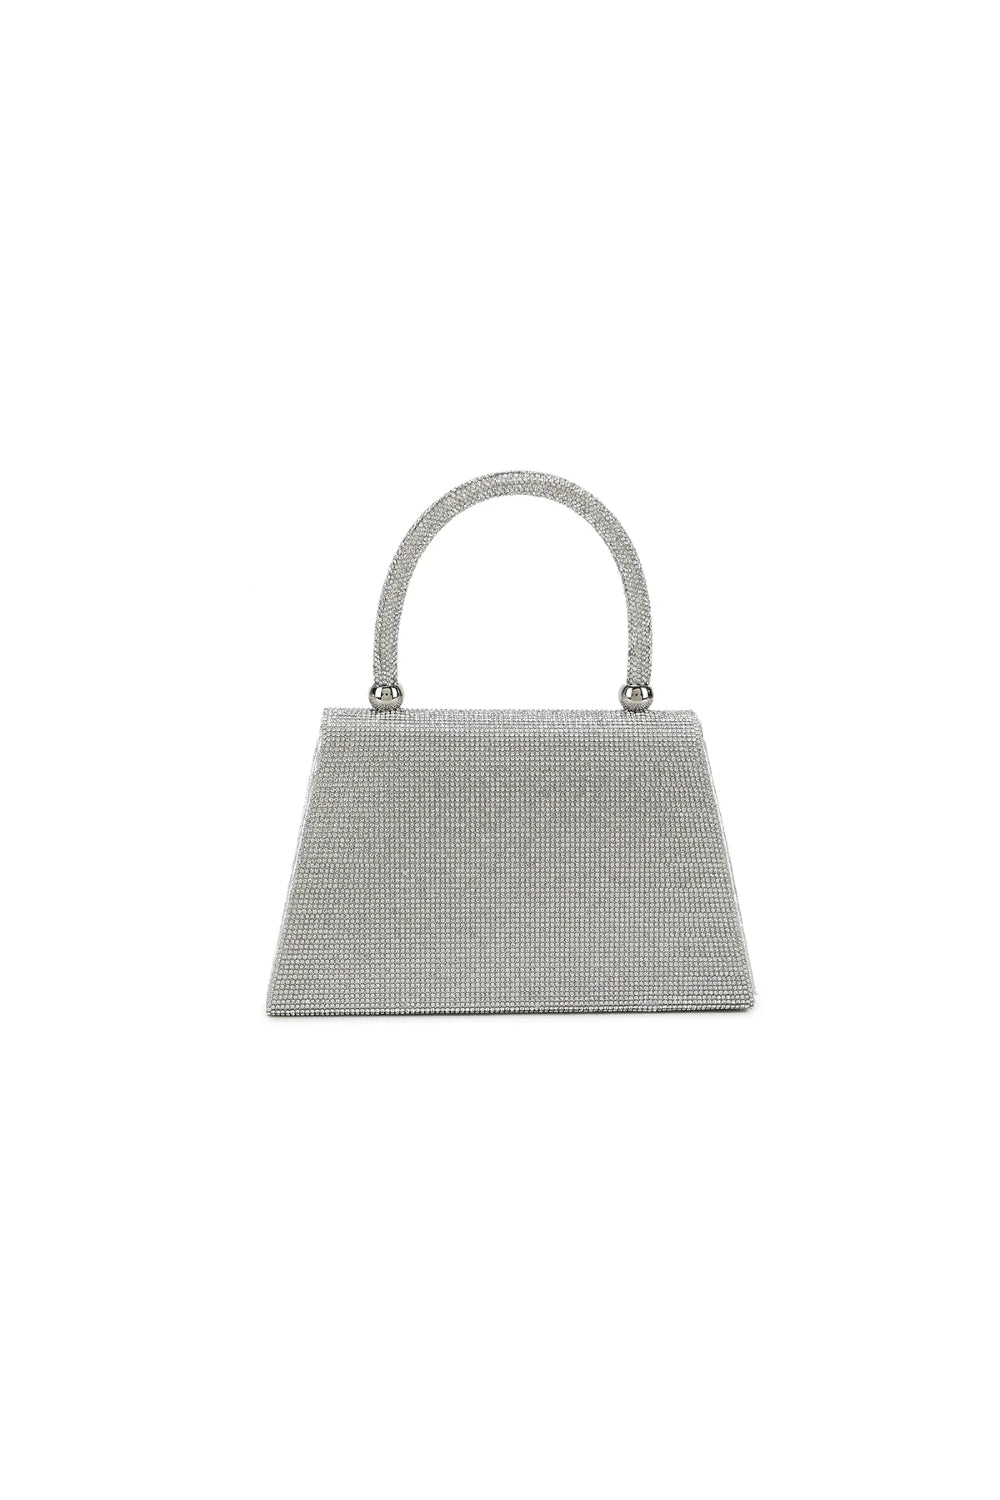 Silver Diamante Top Handle Bag ALH3015